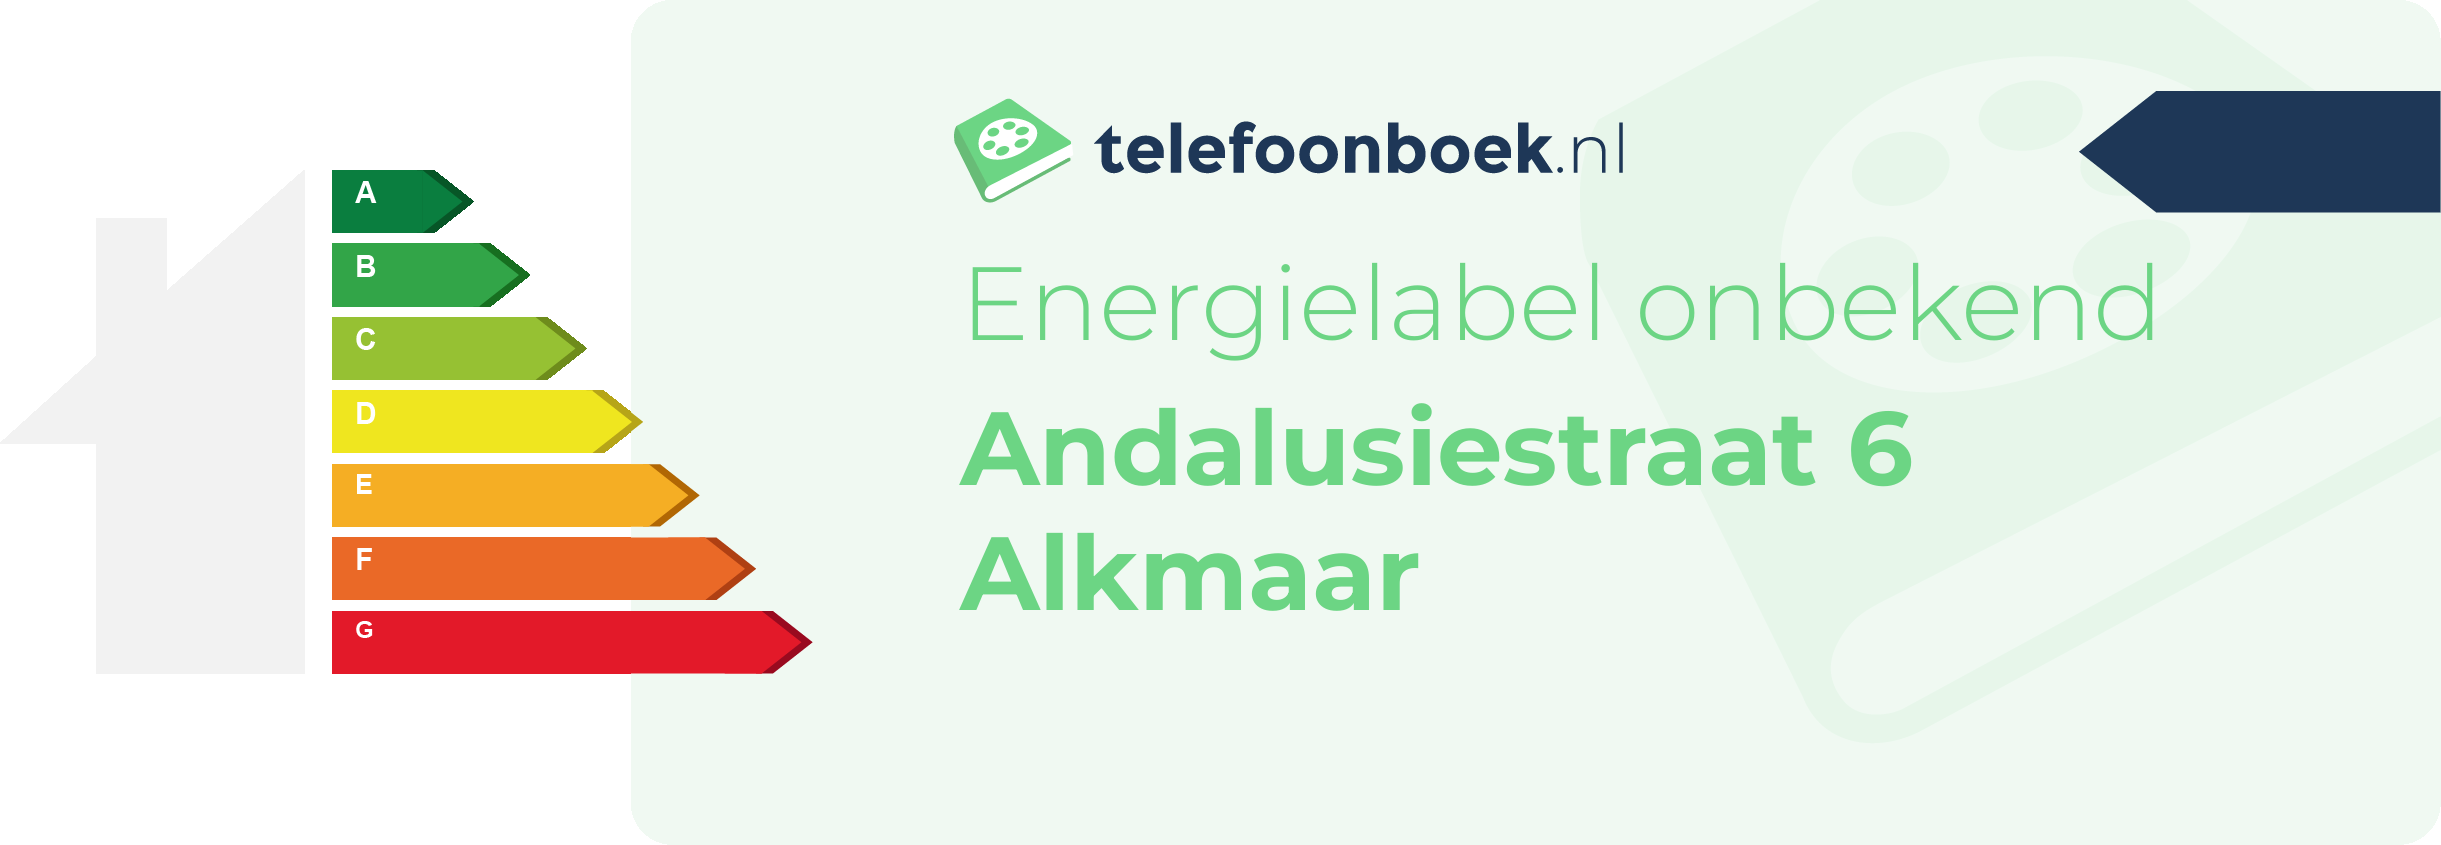 Energielabel Andalusiestraat 6 Alkmaar